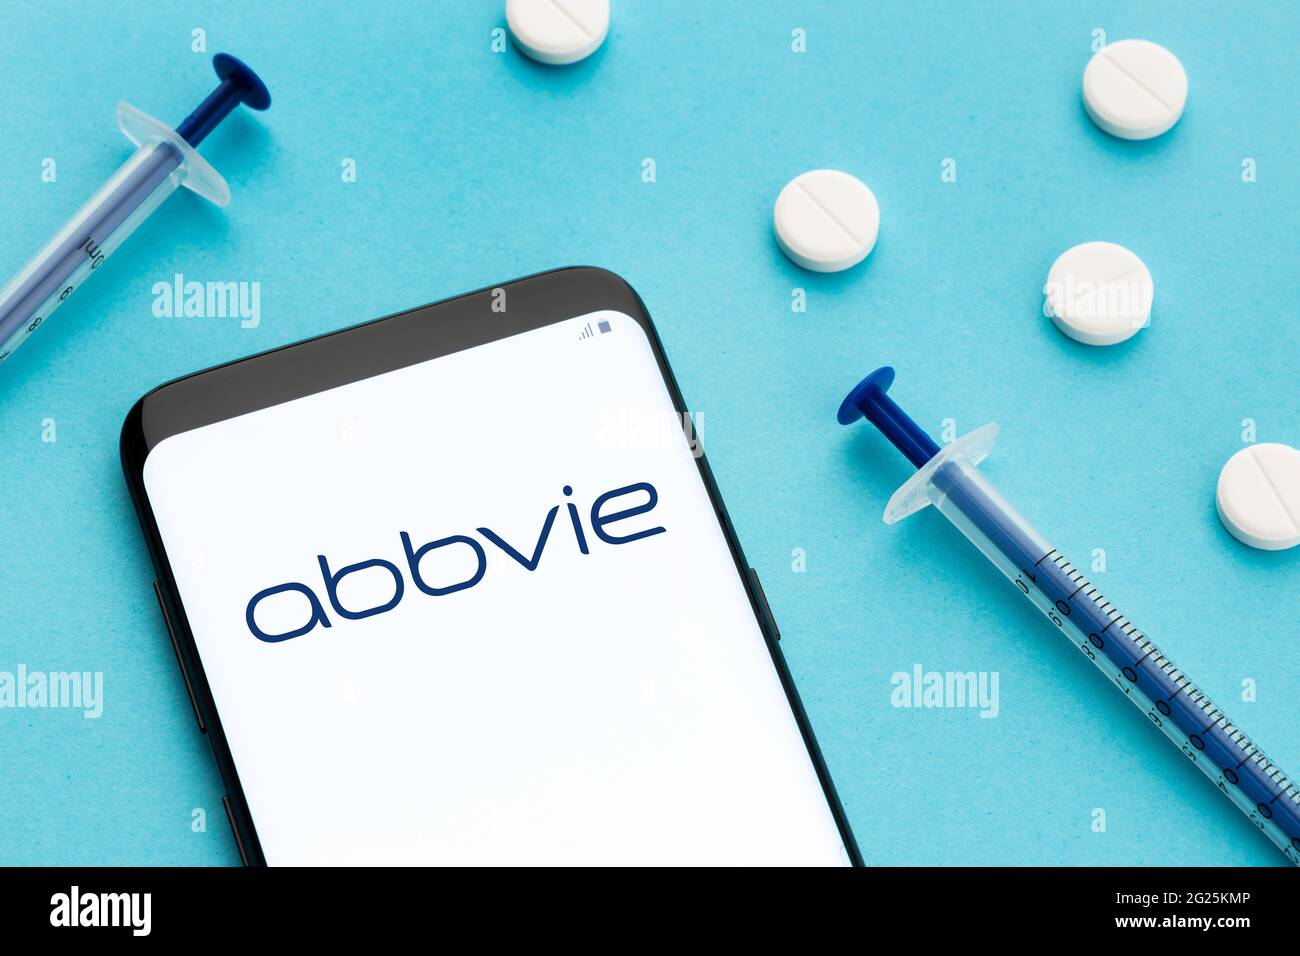 Galizia, Spagna; 8 Giugno 2020 : smartphone con logo Abbvie sullo schermo e pillole e siringa su sfondo blu Foto Stock